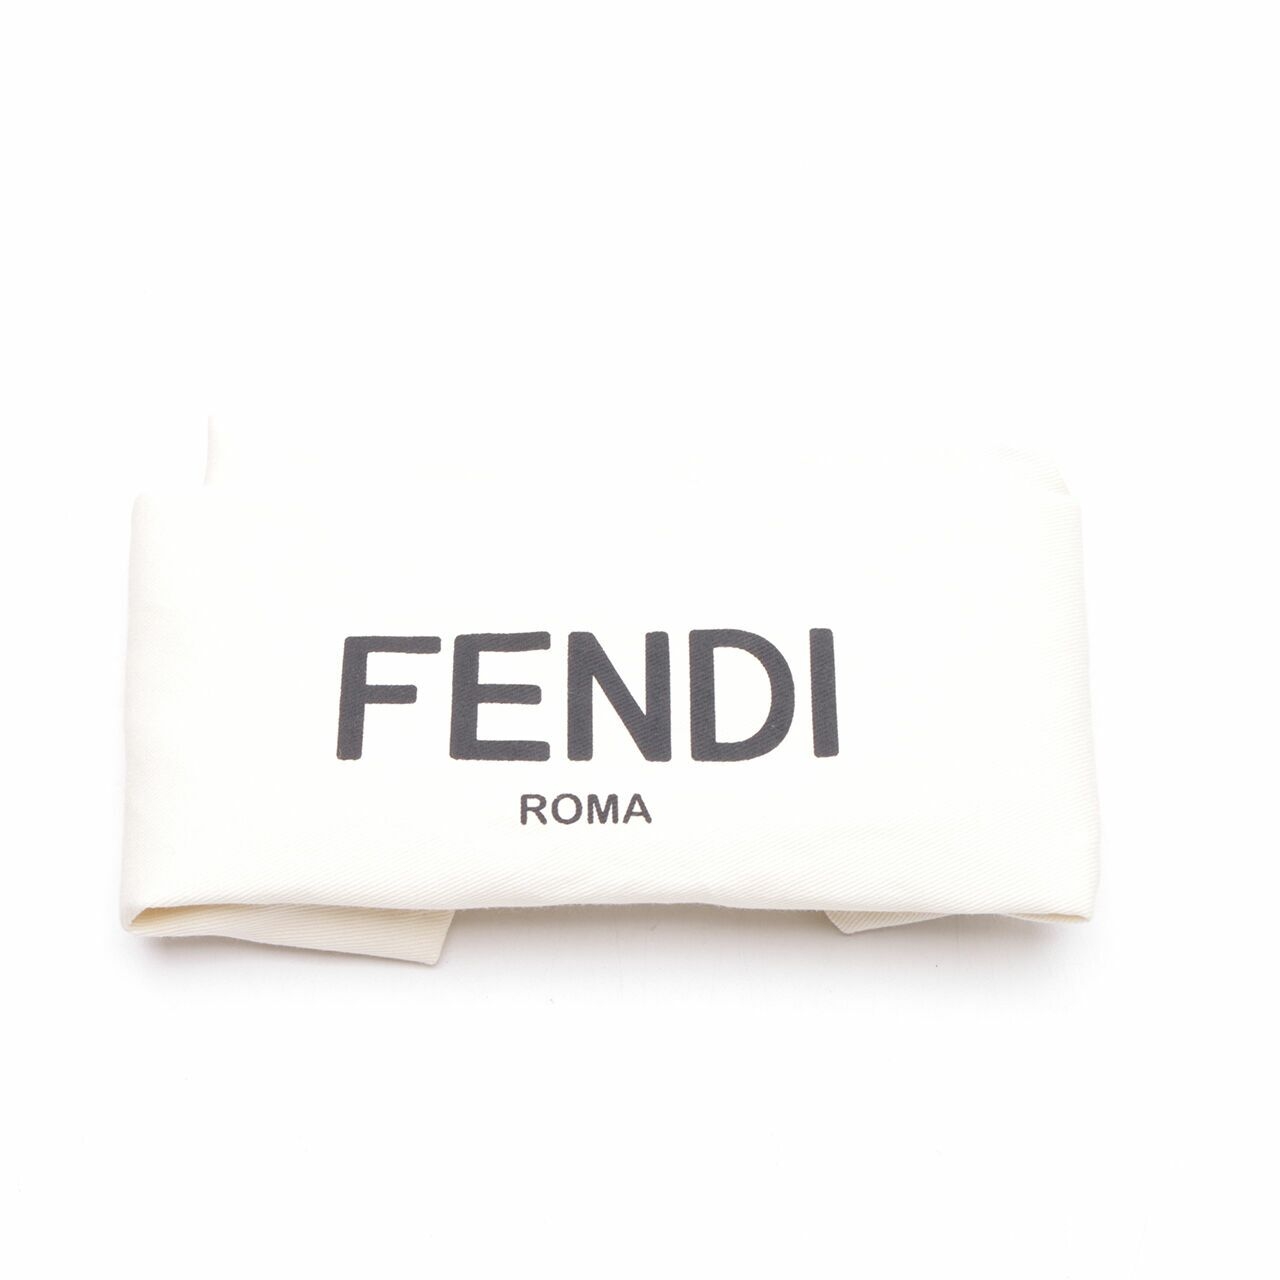 Fendi Strap You Red/Blue Calfskin Leather Shoulder Strap